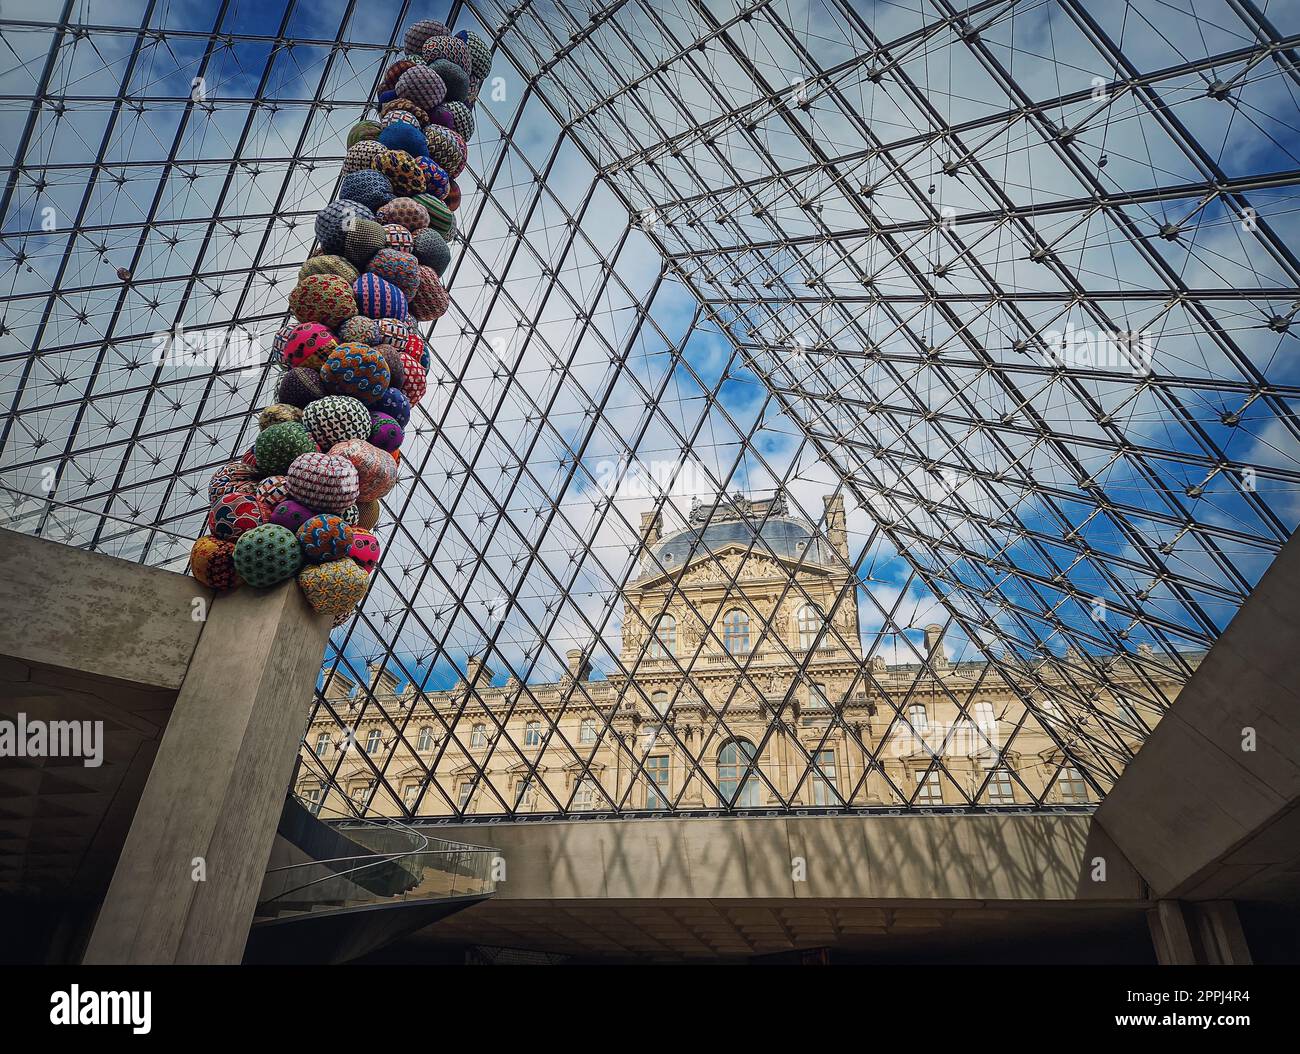 Unter der Glaspyramide des Louvre. Wunderschöne architektonische Details mit einer abstrakten Mischung aus klassischen und modernen Architekturstilen Stockfoto